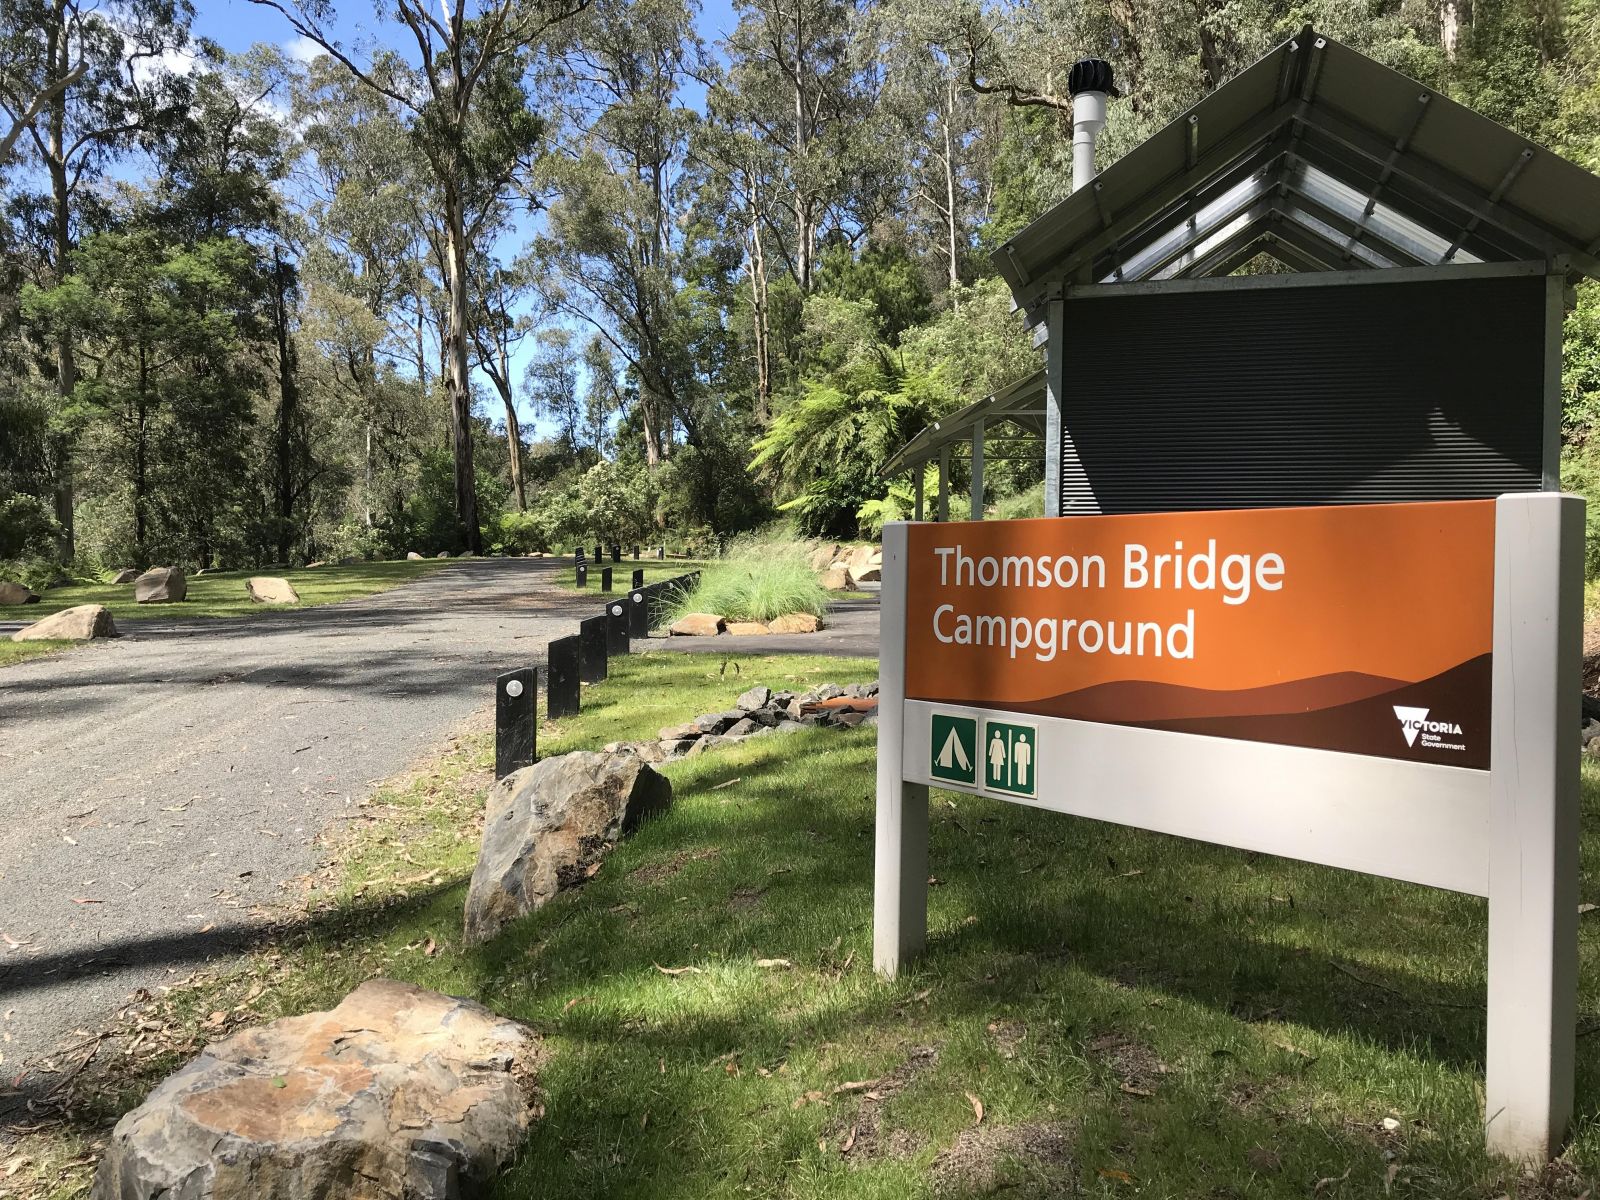 An orange sign reads Thomson Bridge Campground